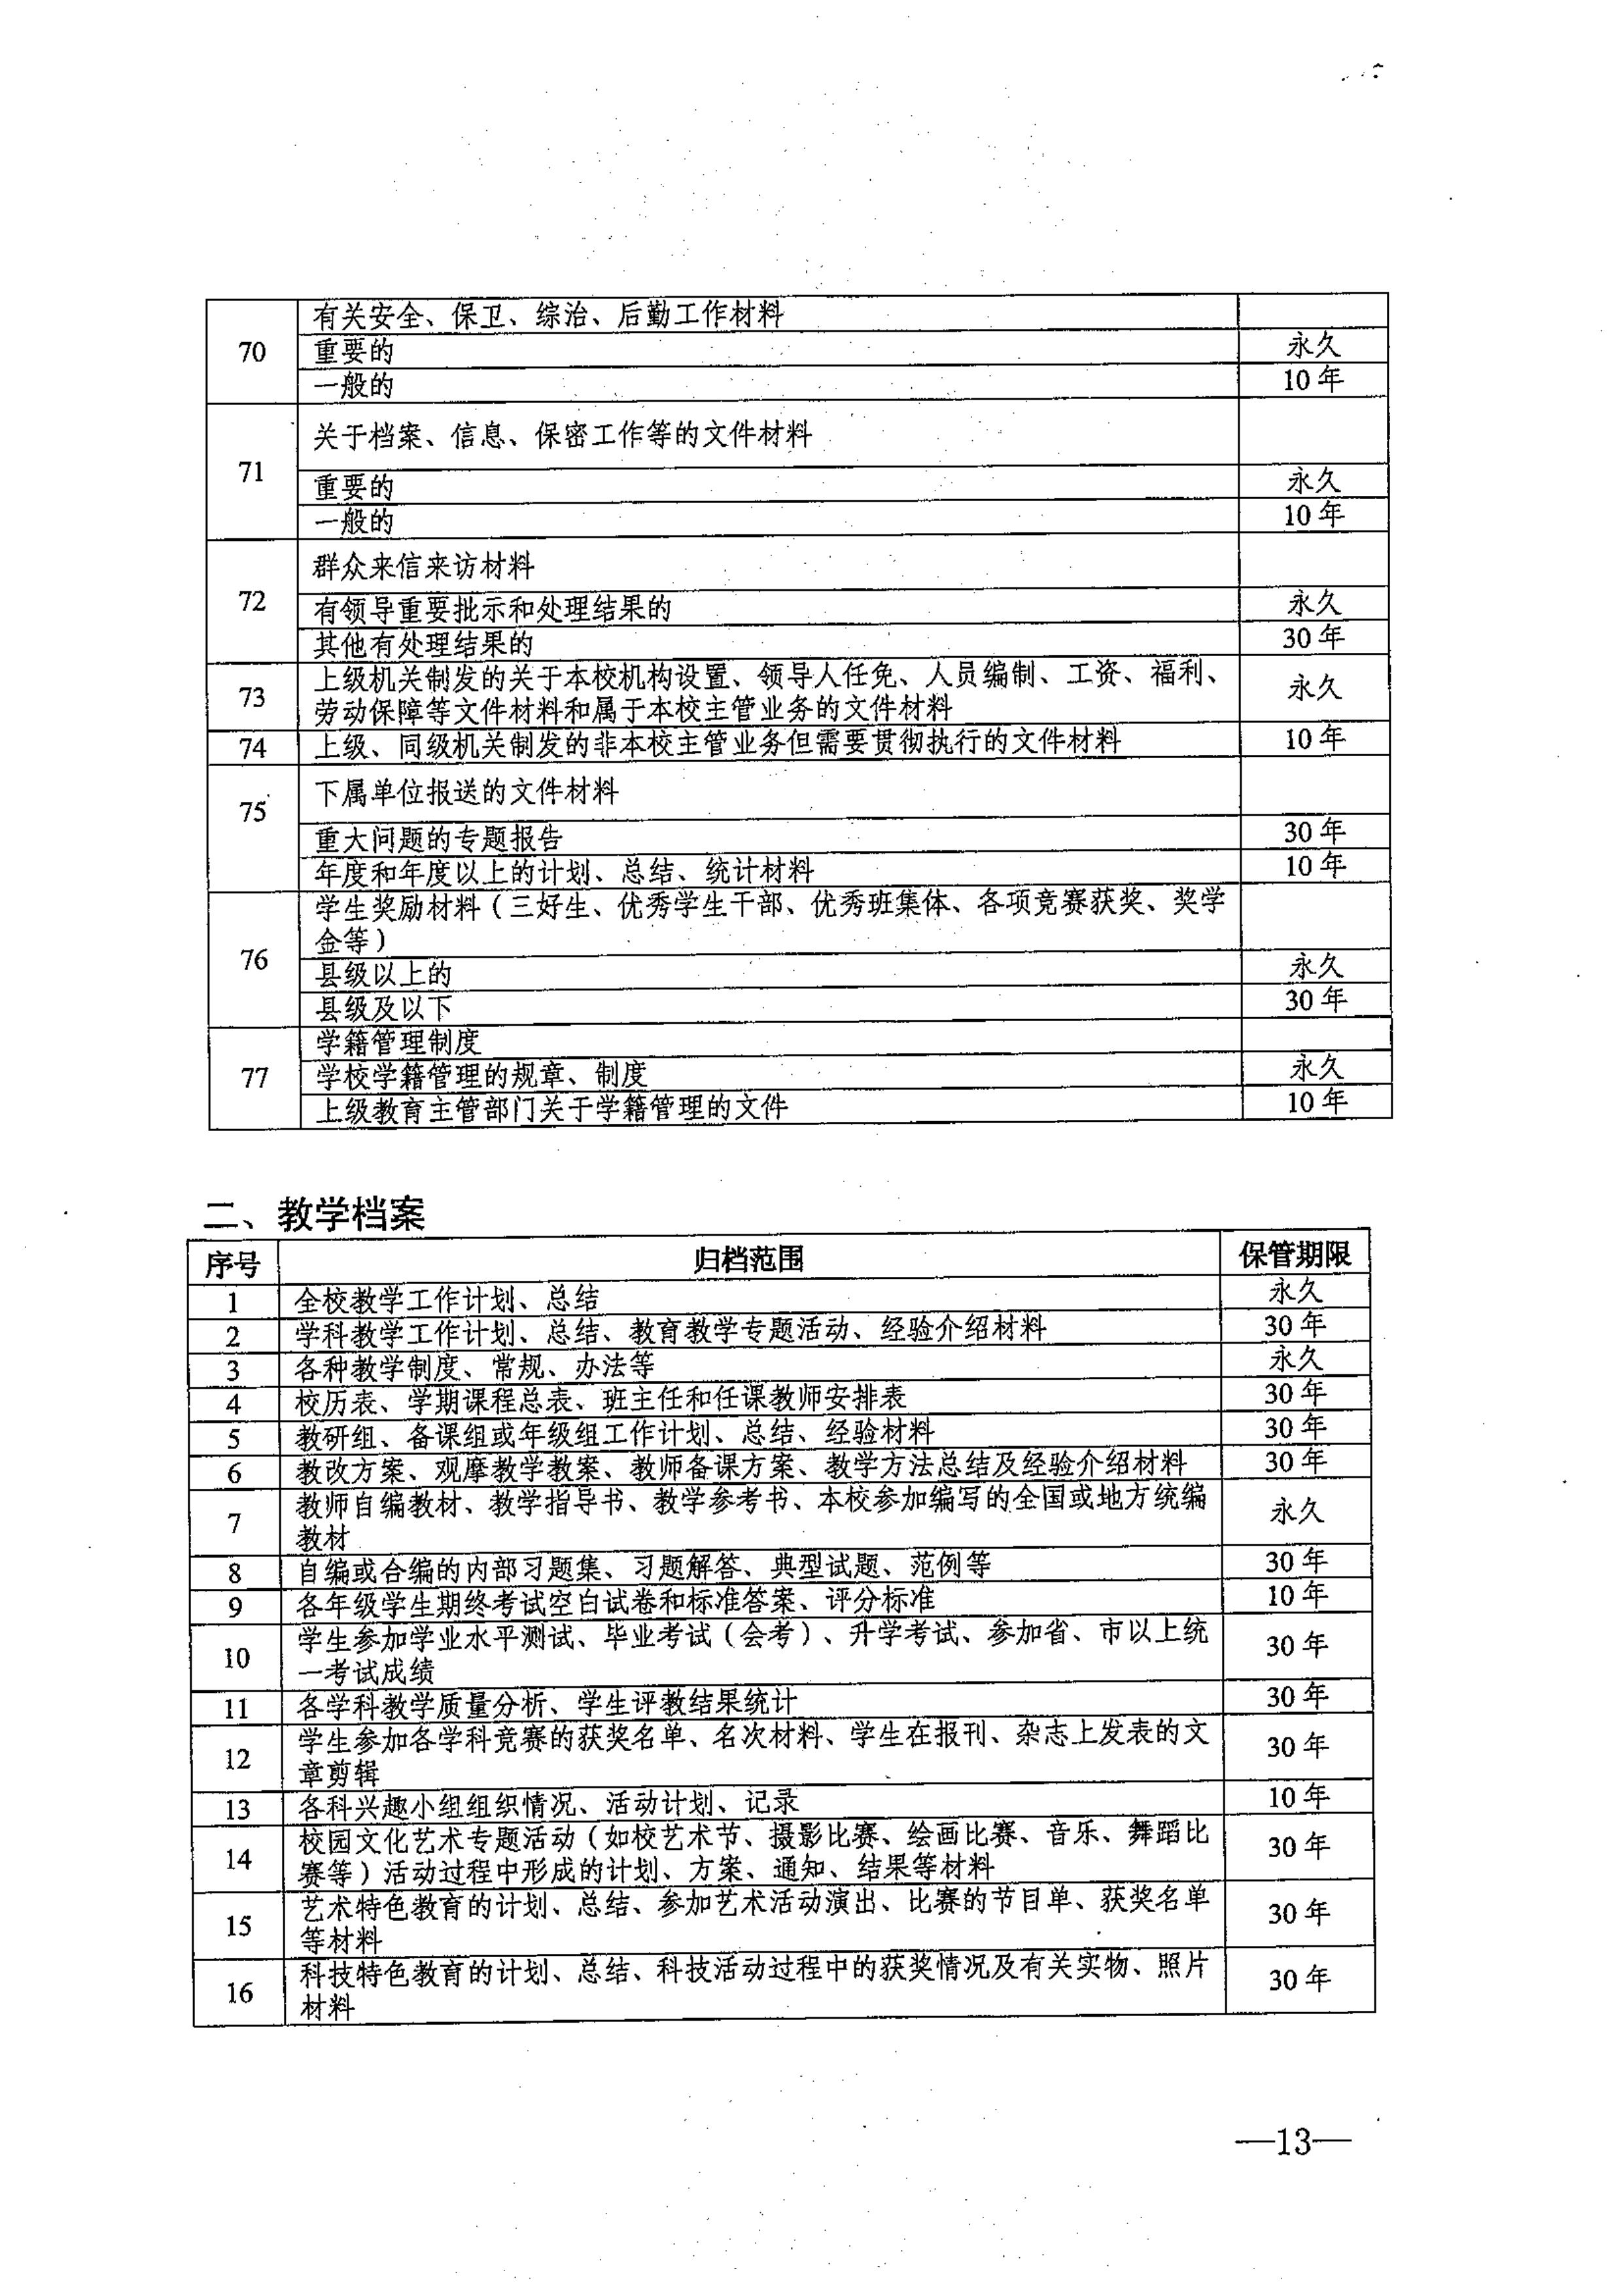 省教育厅、省档案局关于印发《江苏省中小学校档案管理暂行办法》的通知-图片-0013